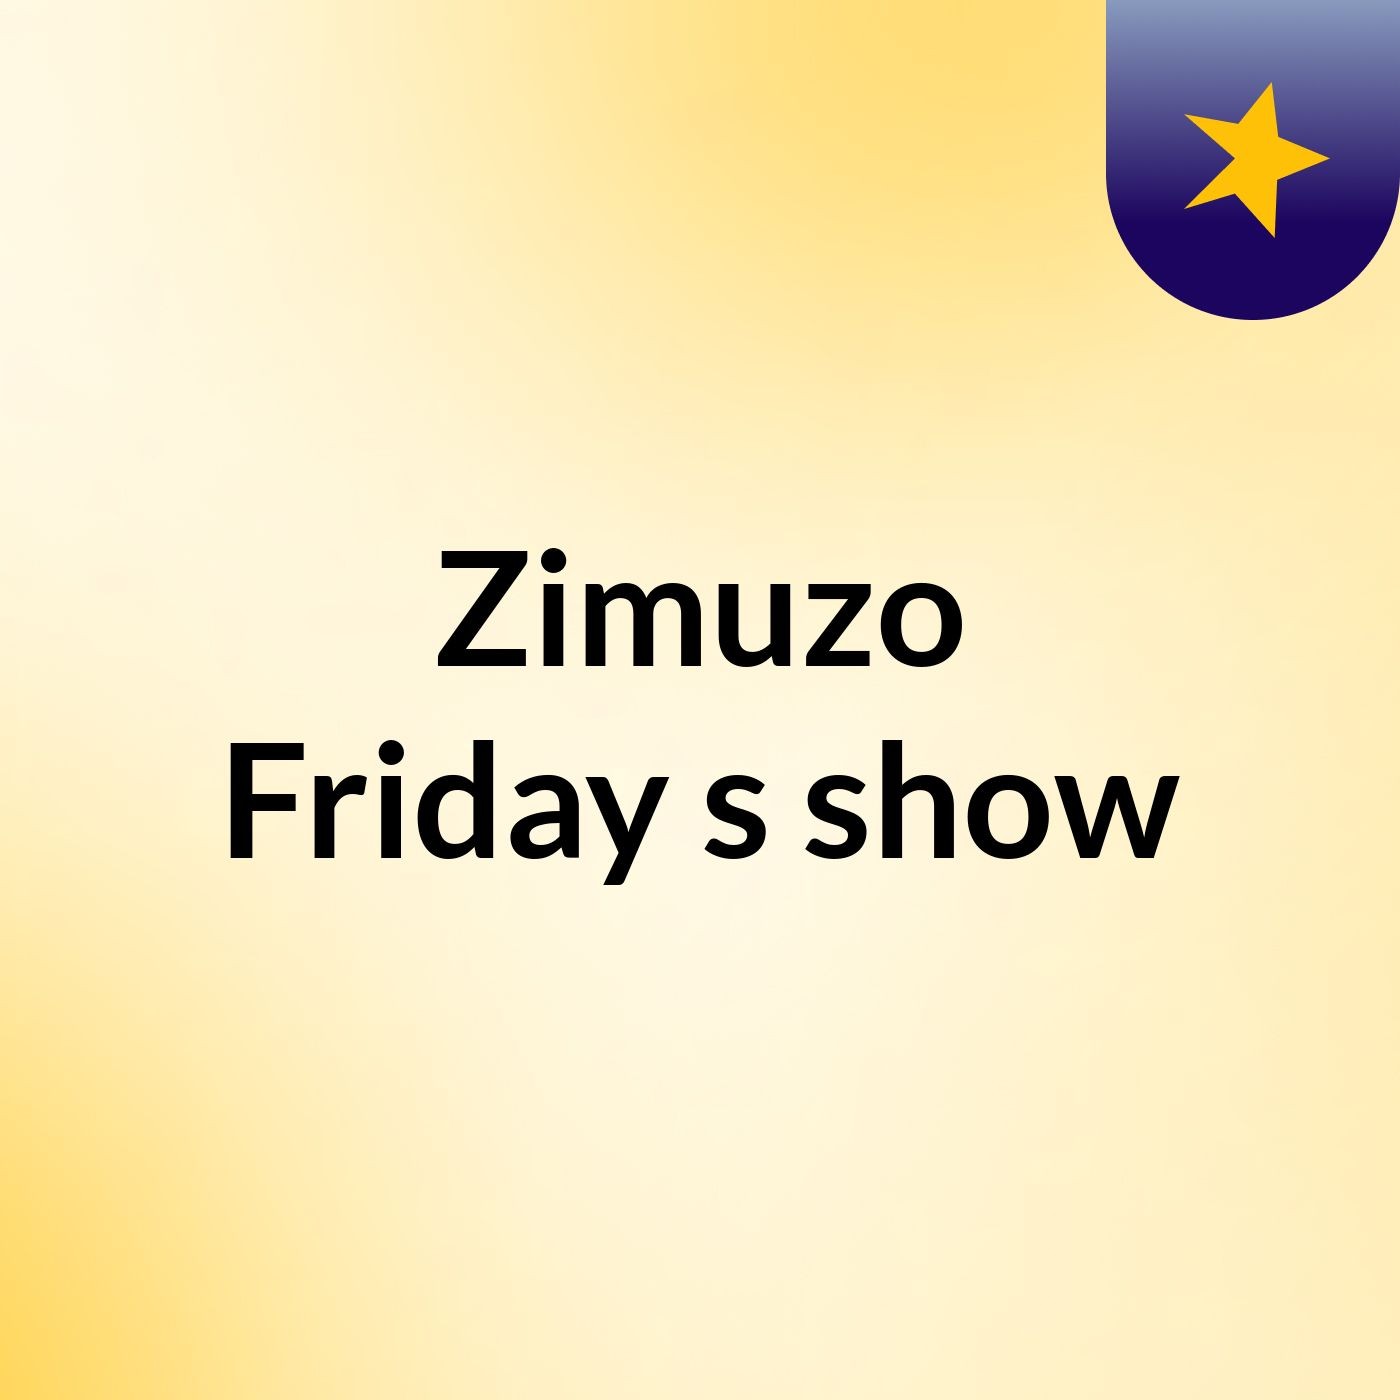 Episode 2 - Zimuzo Friday's show